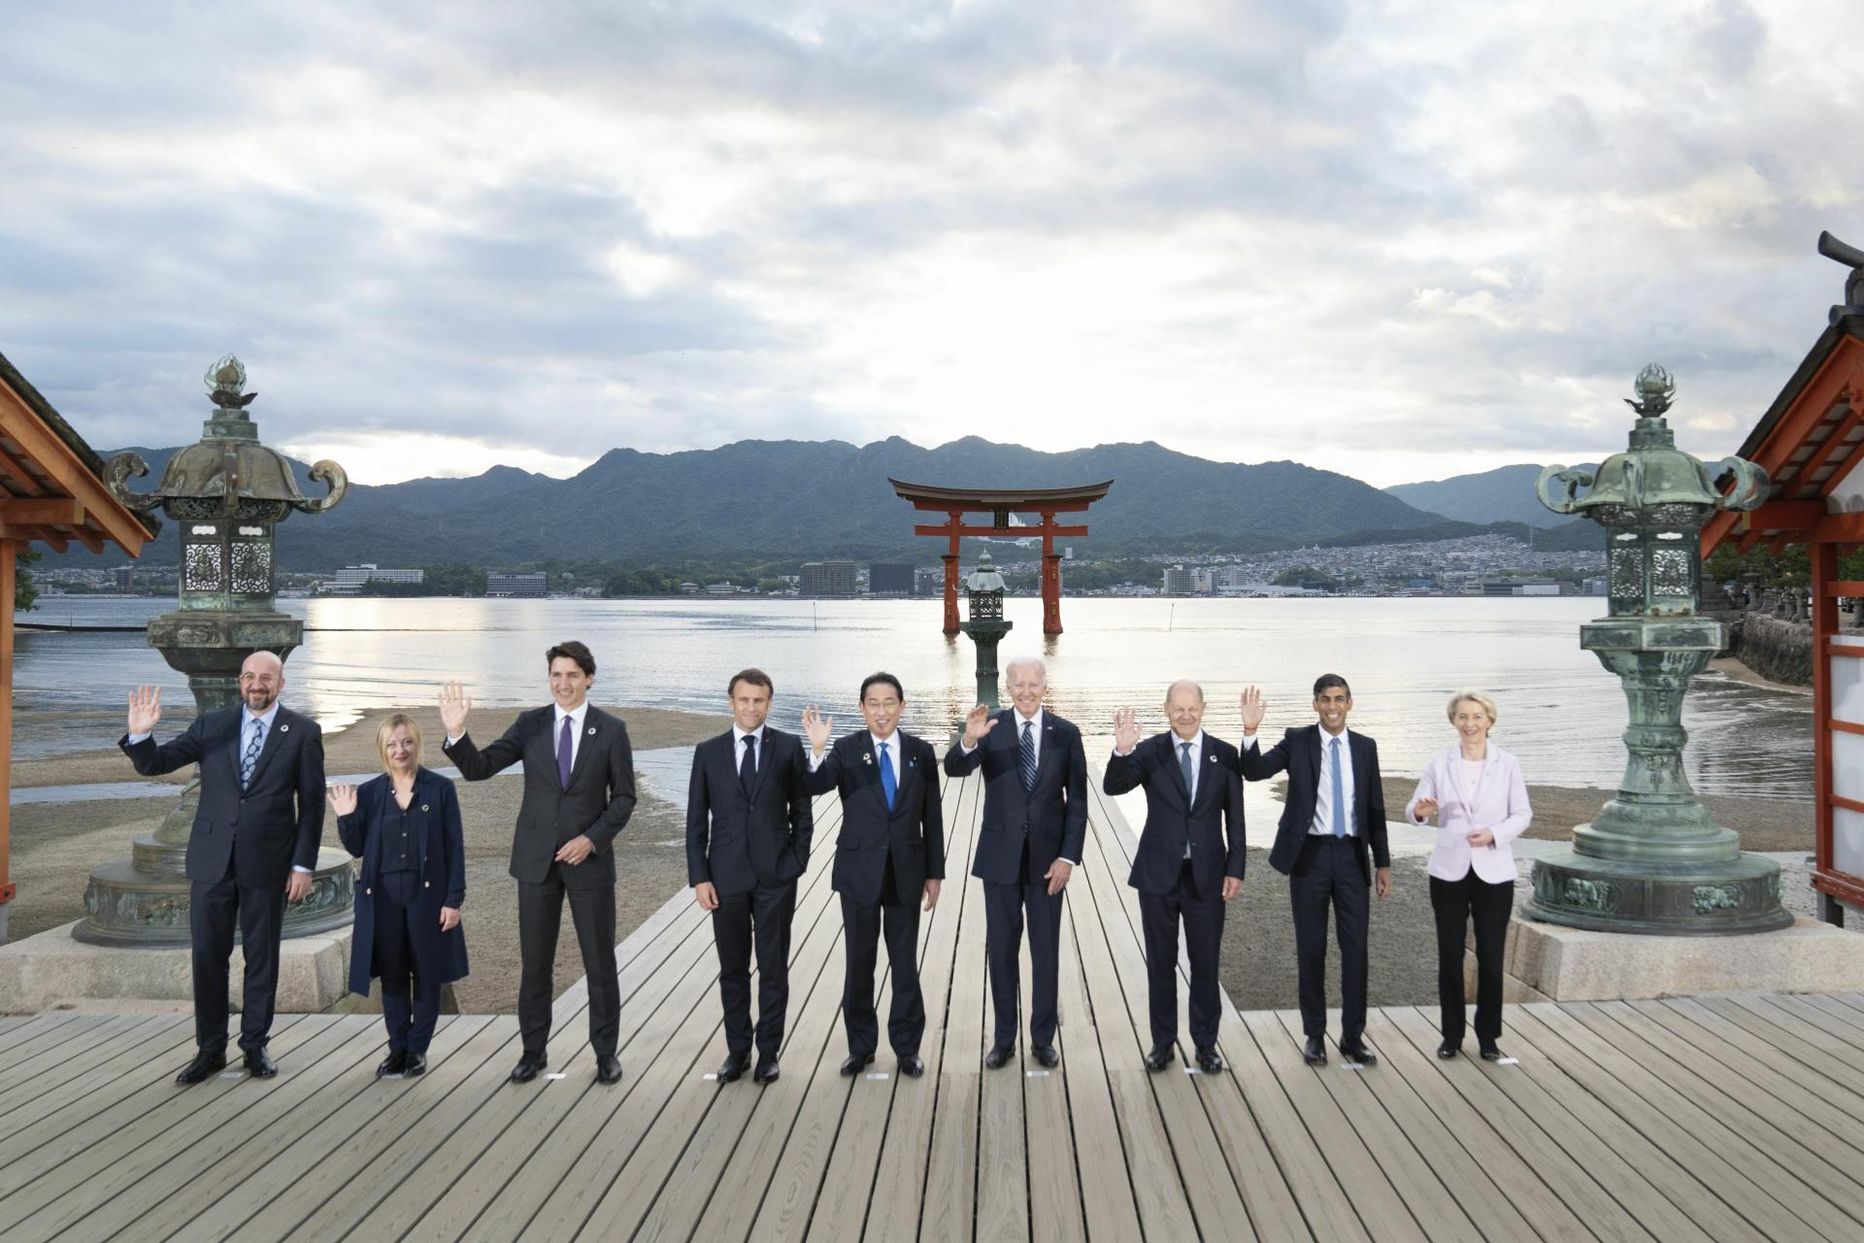 G7 tippkohtumisele kogunenud juhid Itsukushima pühamu juures.